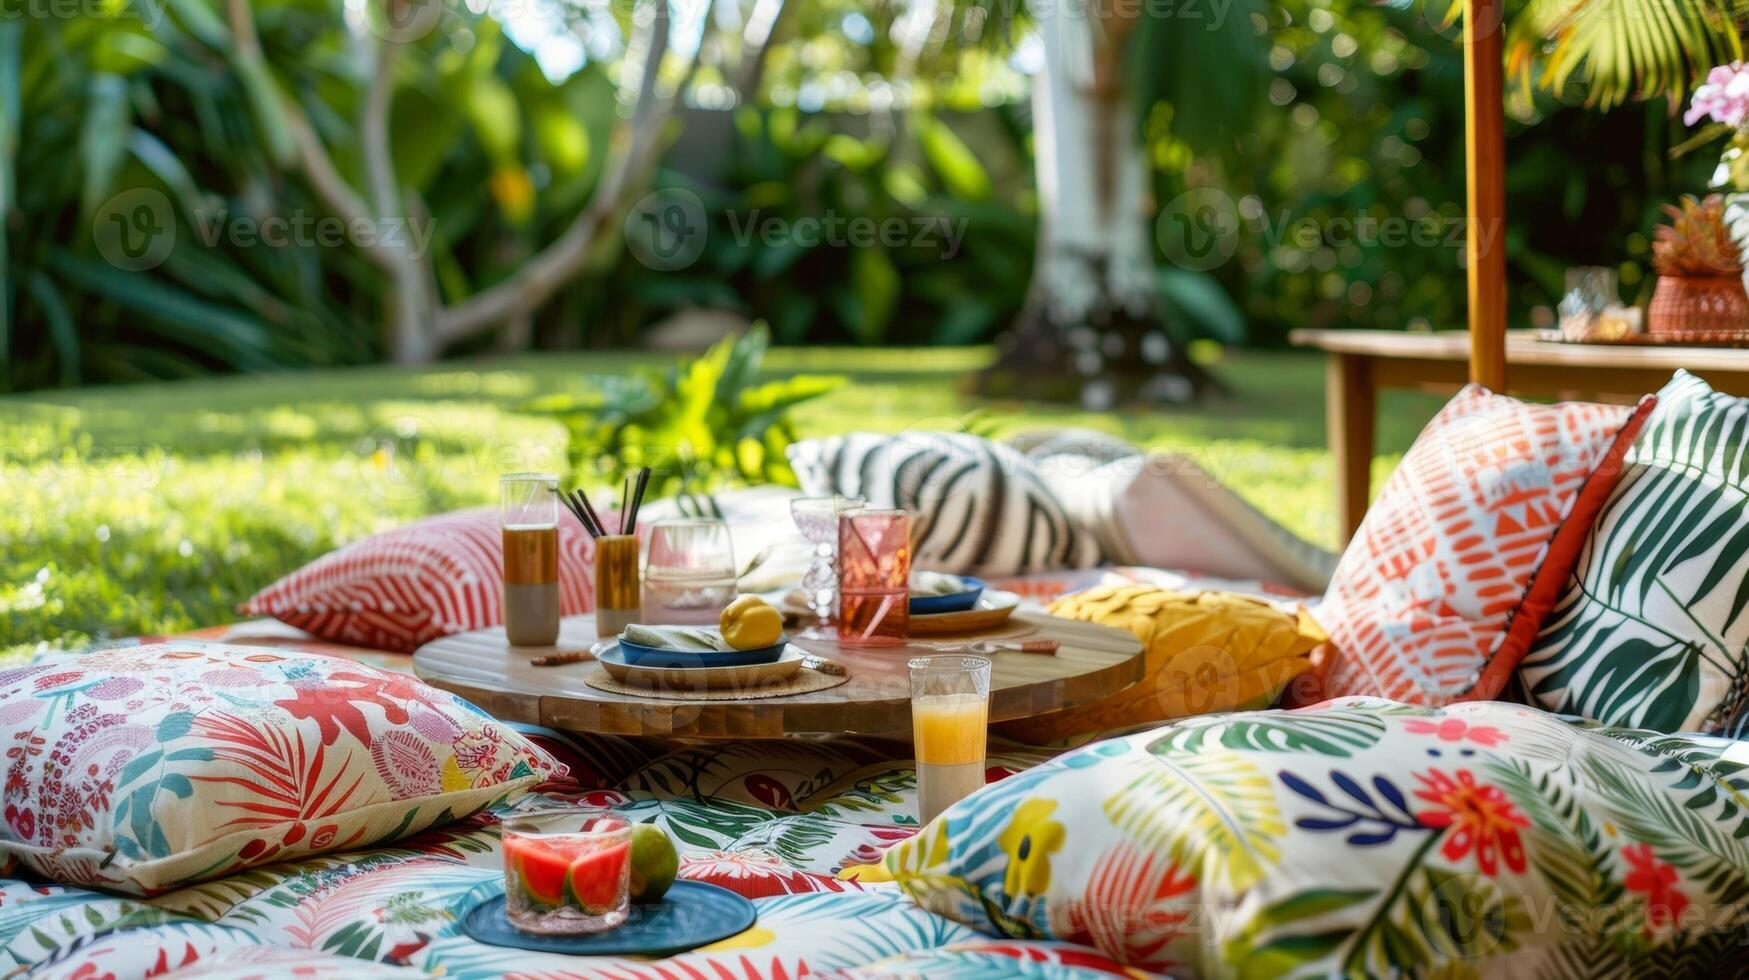 bild 13 en bakgård scen av en tropiskt inspirerad picknick uppstart terar en låg tabell med överdimensionerad kuddar för sittplatser täckt i en mängd av tropisk skriva ut filtar och kuddar foto